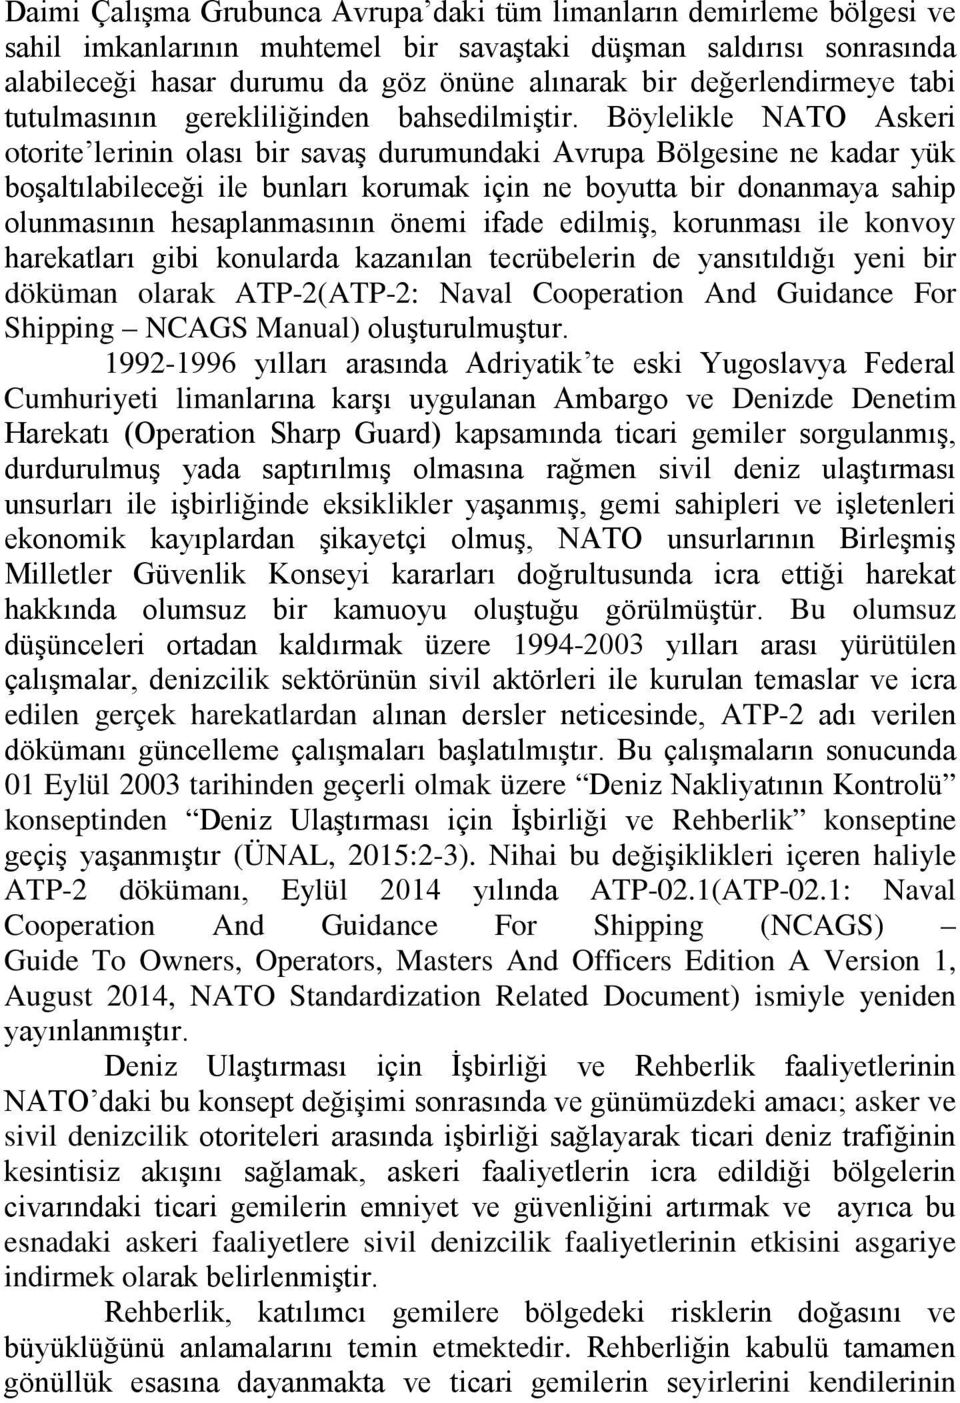 Böylelikle NATO Askeri otorite lerinin olası bir savaş durumundaki Avrupa Bölgesine ne kadar yük boşaltılabileceği ile bunları korumak için ne boyutta bir donanmaya sahip olunmasının hesaplanmasının